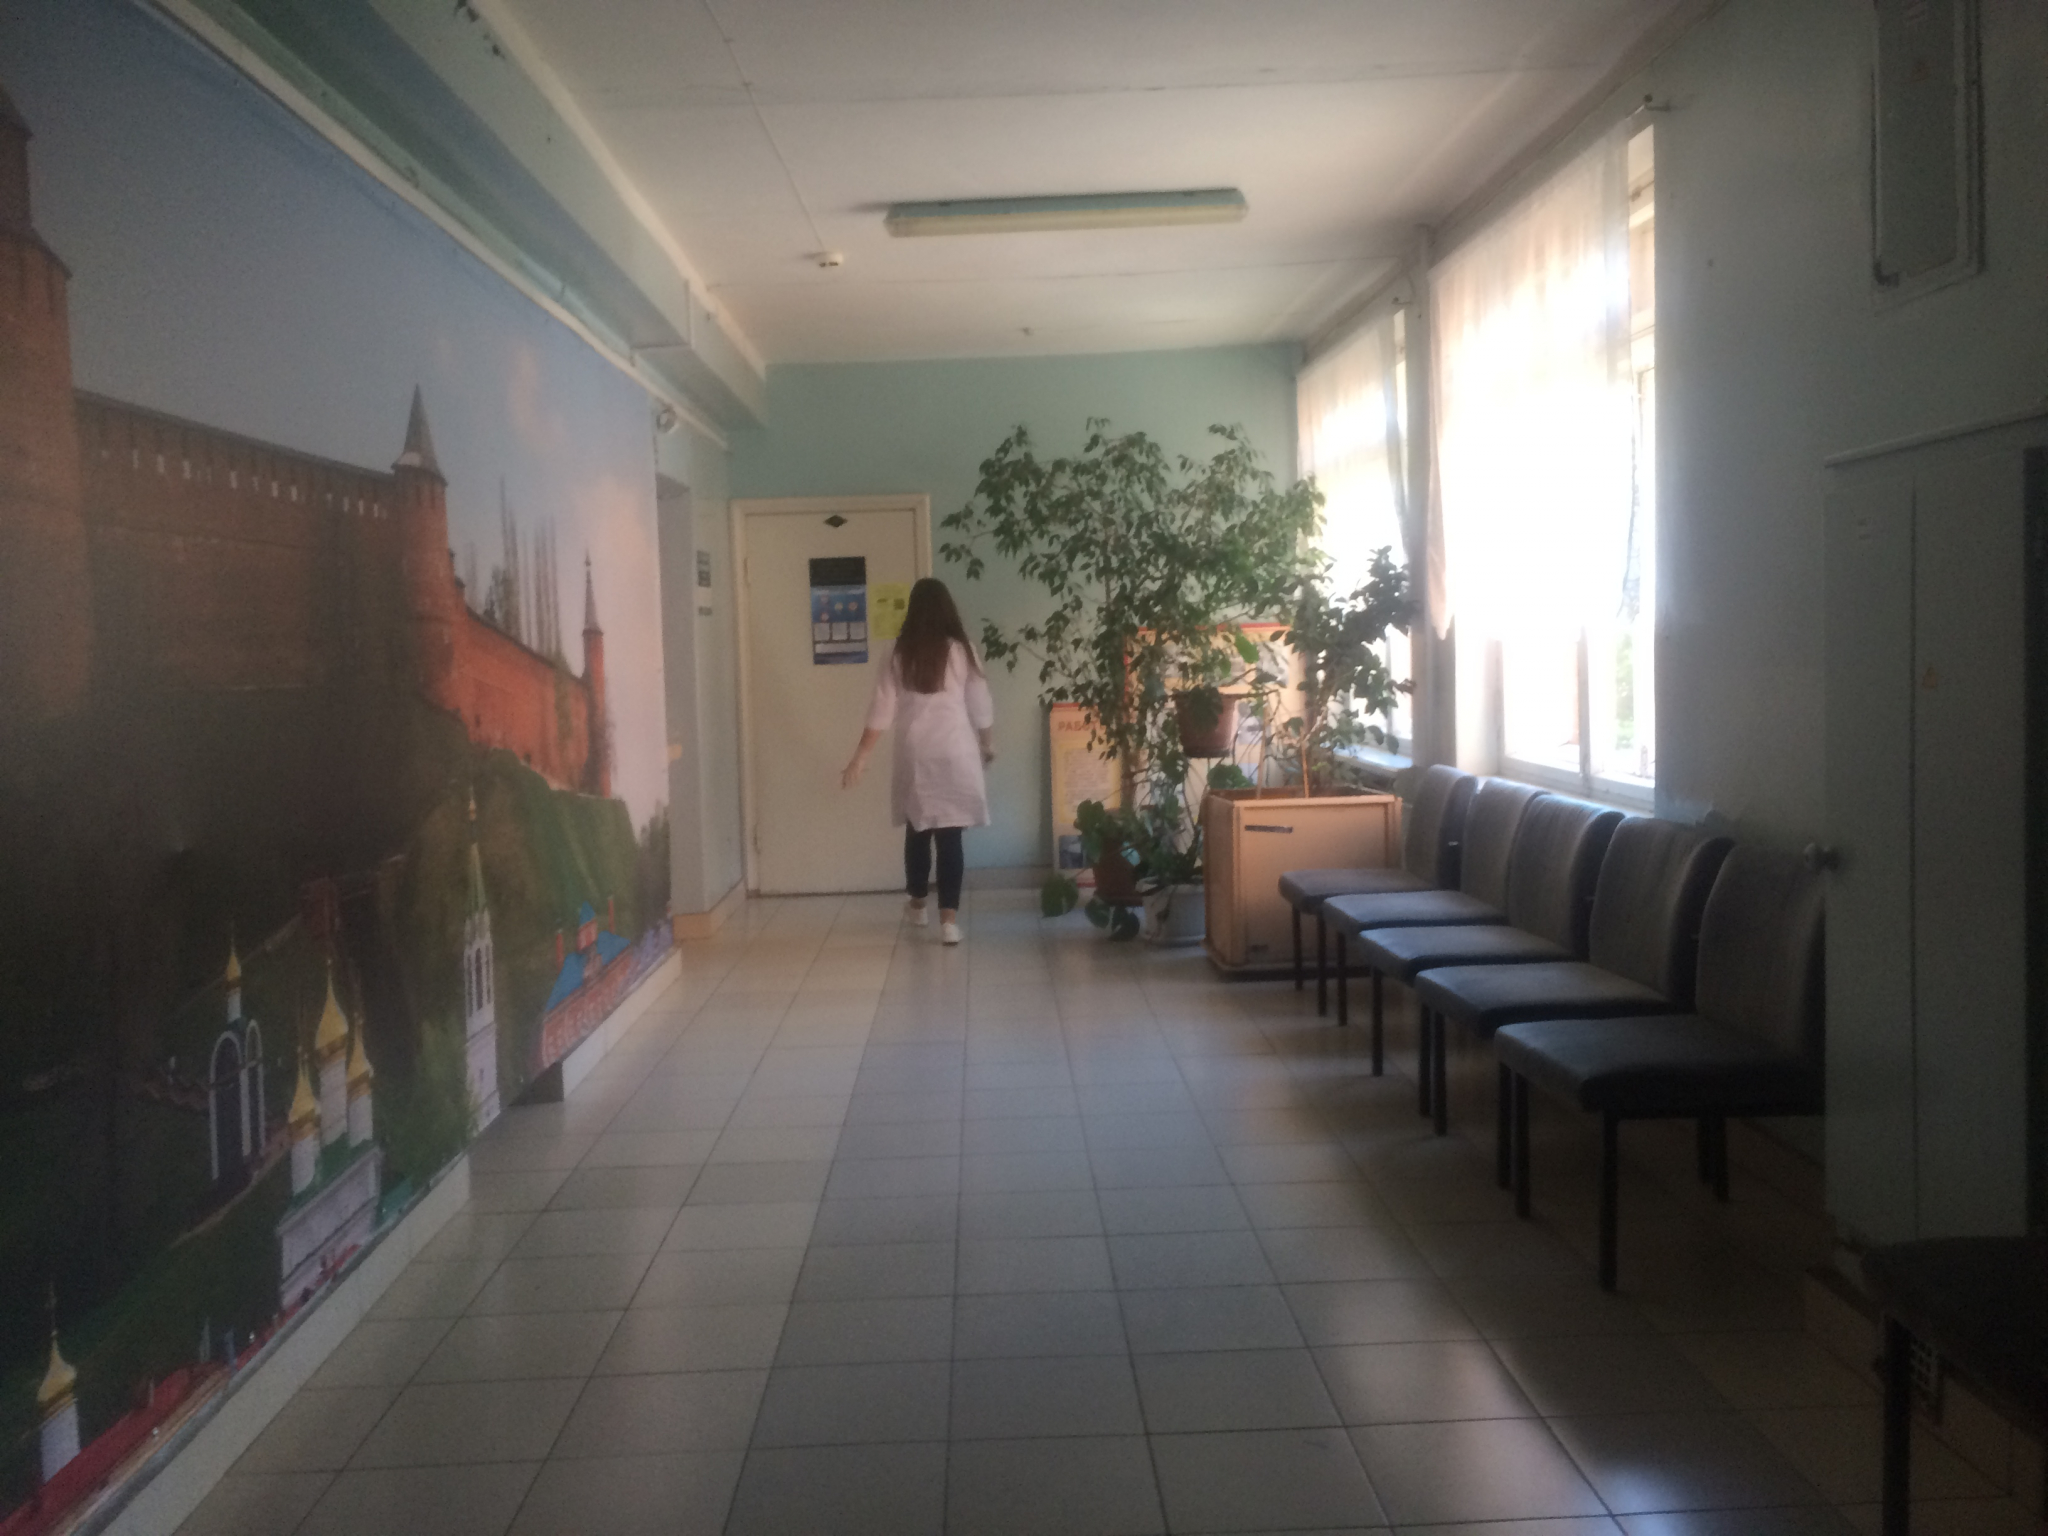 Еще семь человек умерли от коронавируса в Нижегородской области